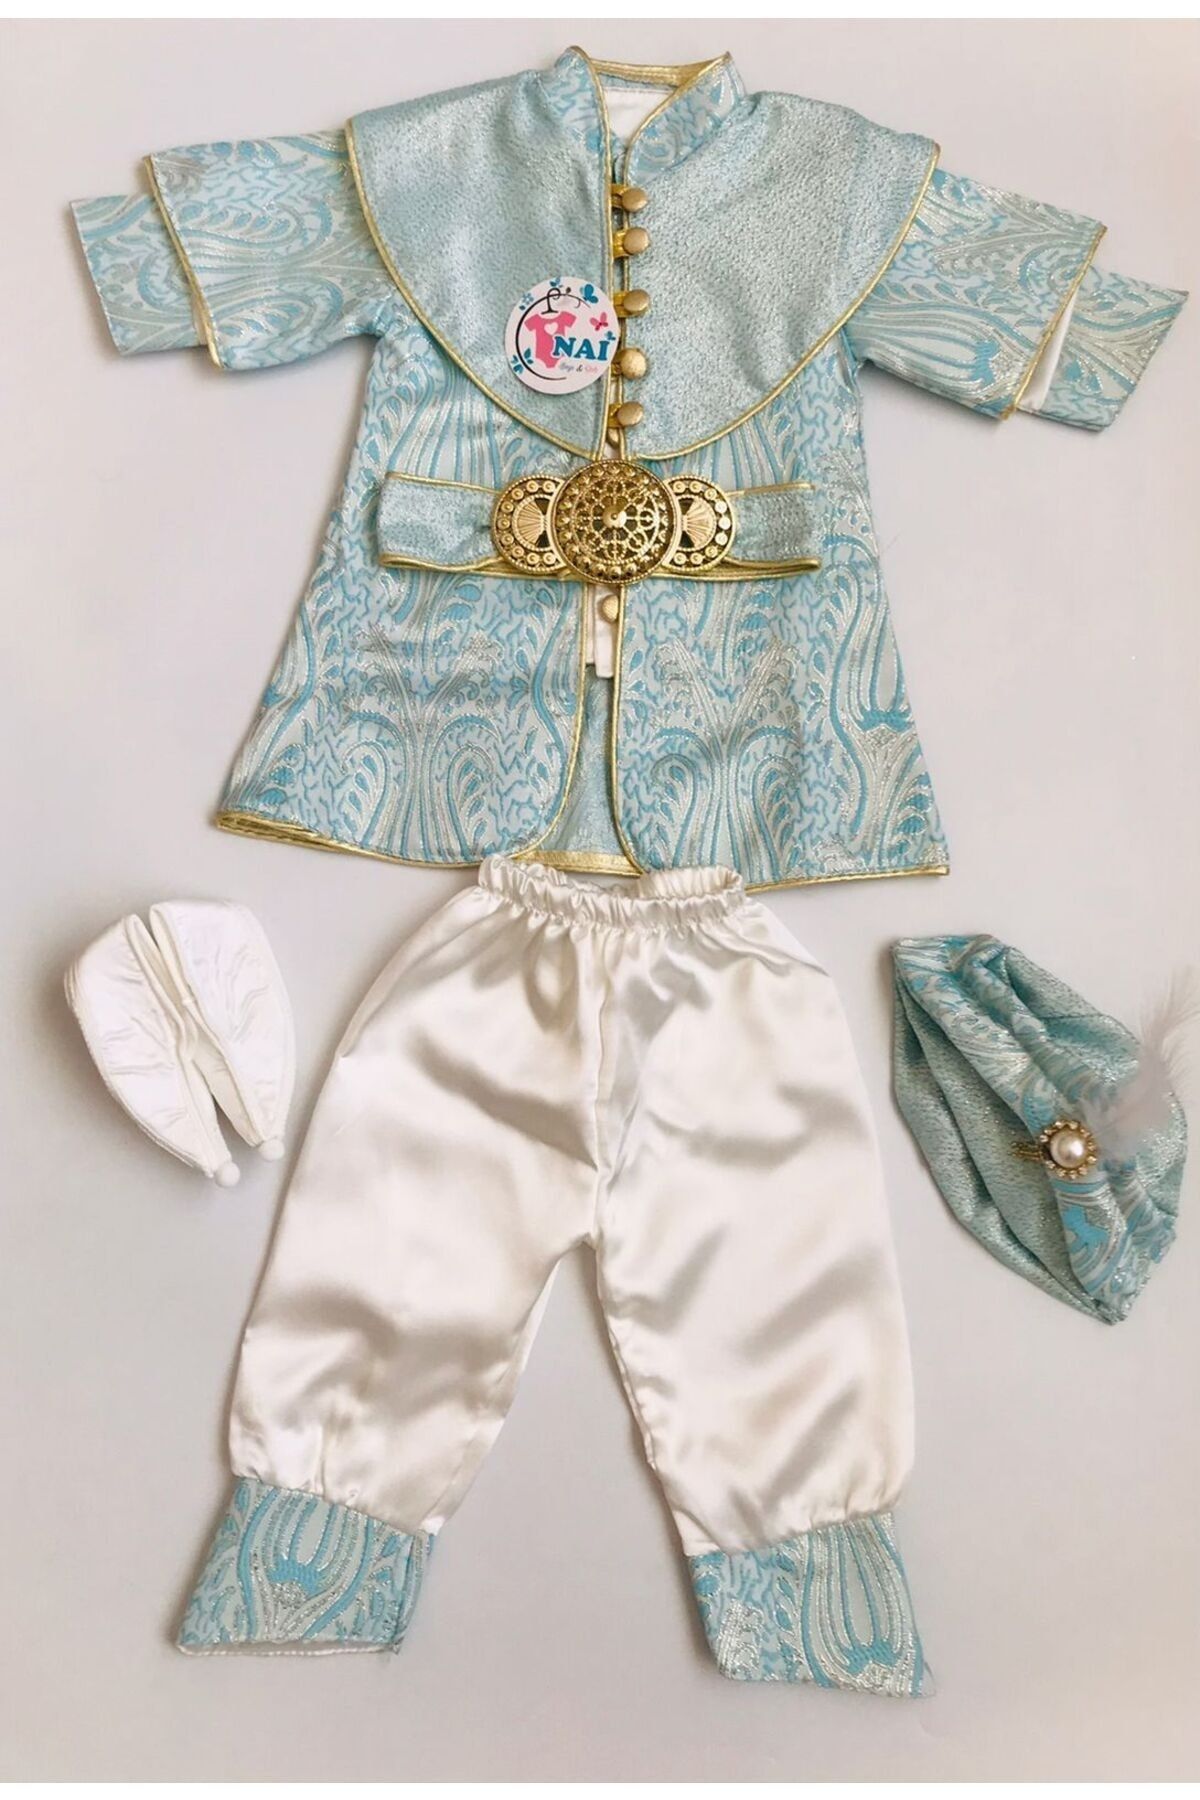 Nai baby Altın Renk Kemerli Erkek Bebek Şehzade Takımı Sünnetlik Özel Gün Kıyafeti Gold 5 Parça